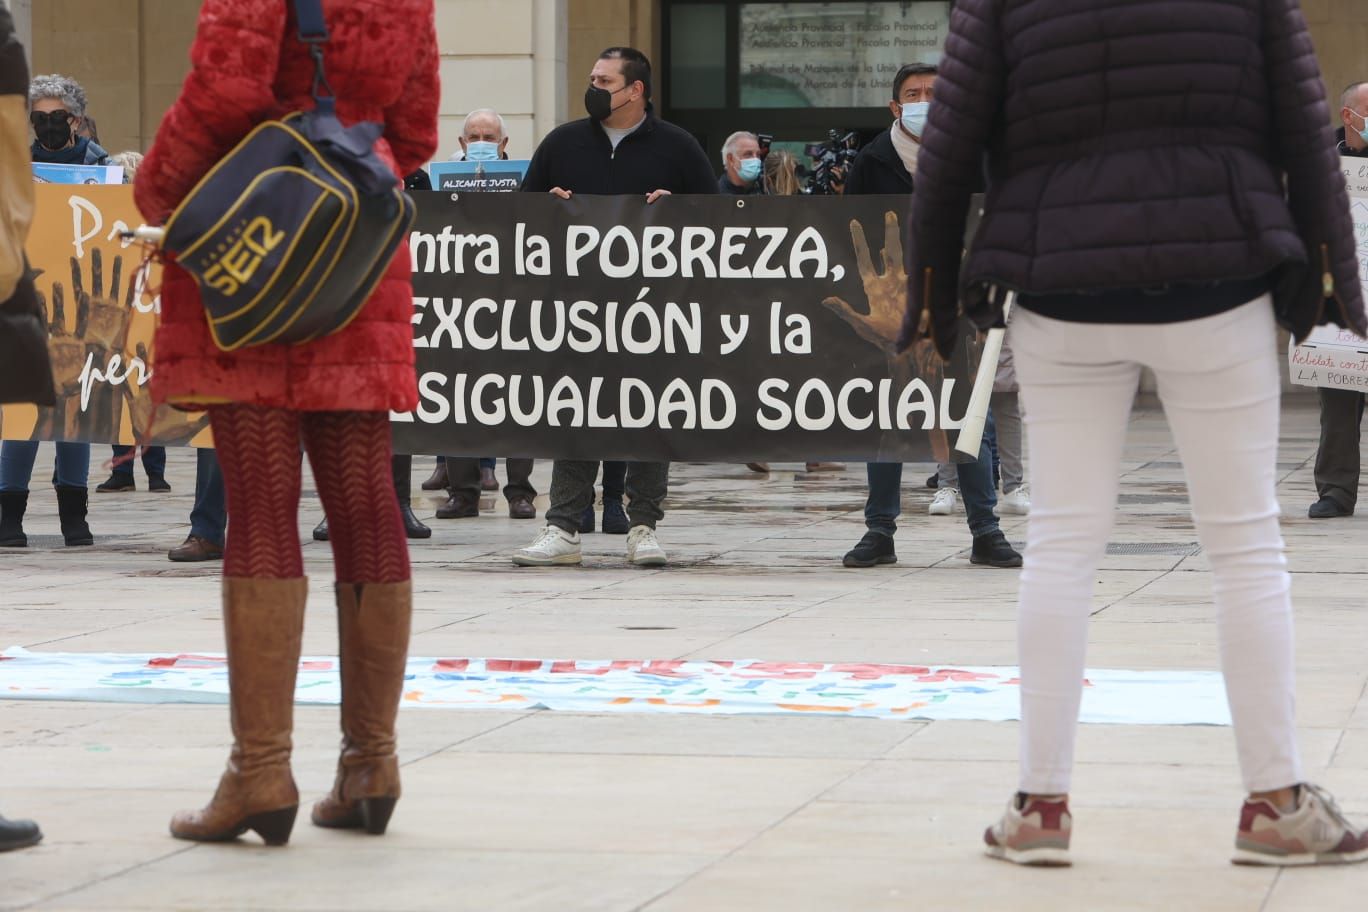 Protesta contra Ordenanza Convivencia Cívica en la plaza del Ayuntamiento